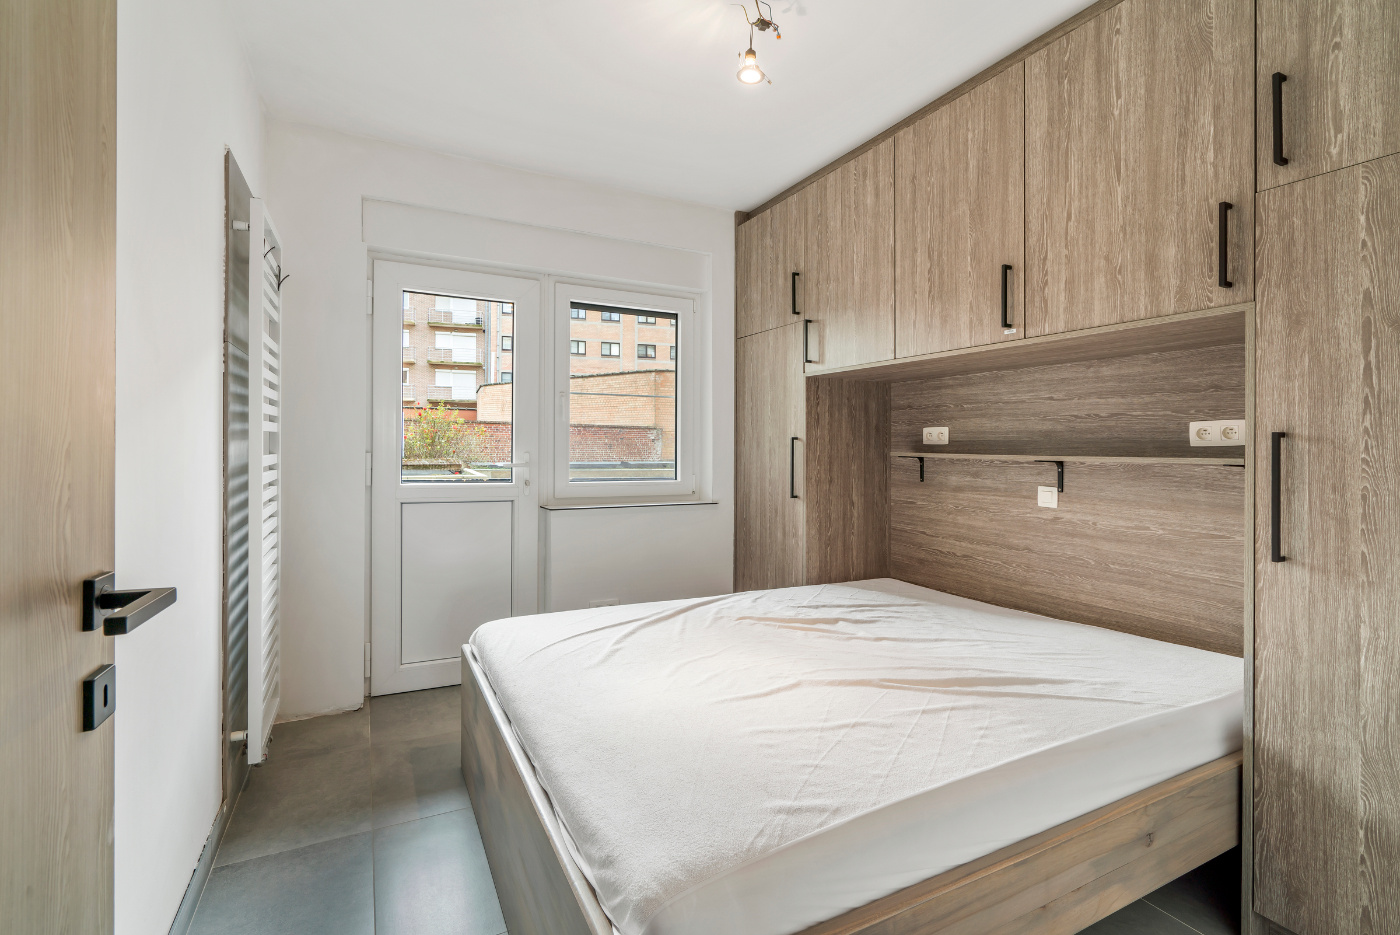 Koksijde-Zeedijk - Gelijkvloers appartement met 3 slaapkamers en frontaal zeezicht inclusief garage - Residentie Le Provence foto 12